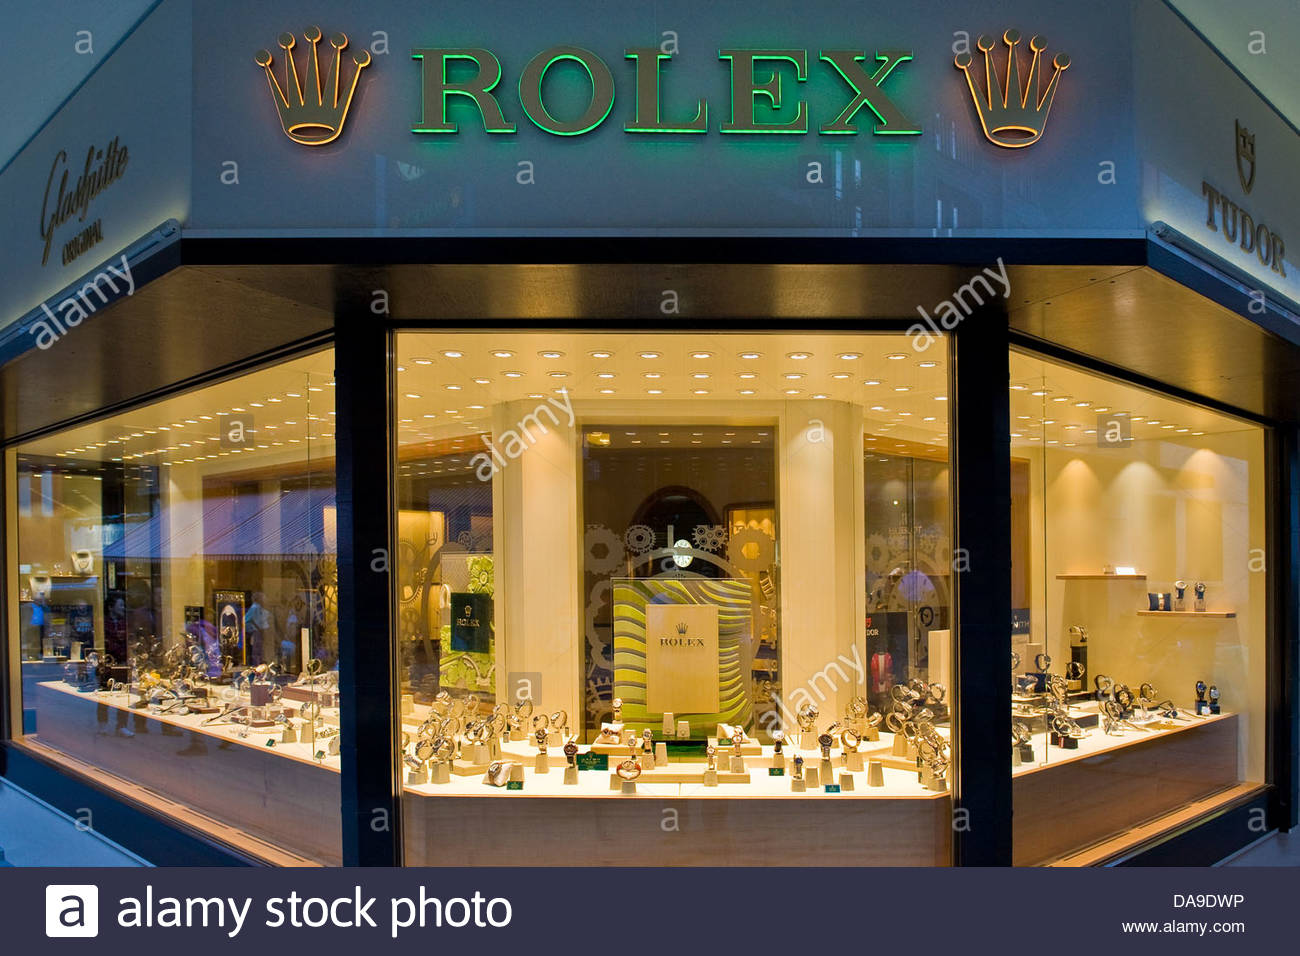 rolex shop